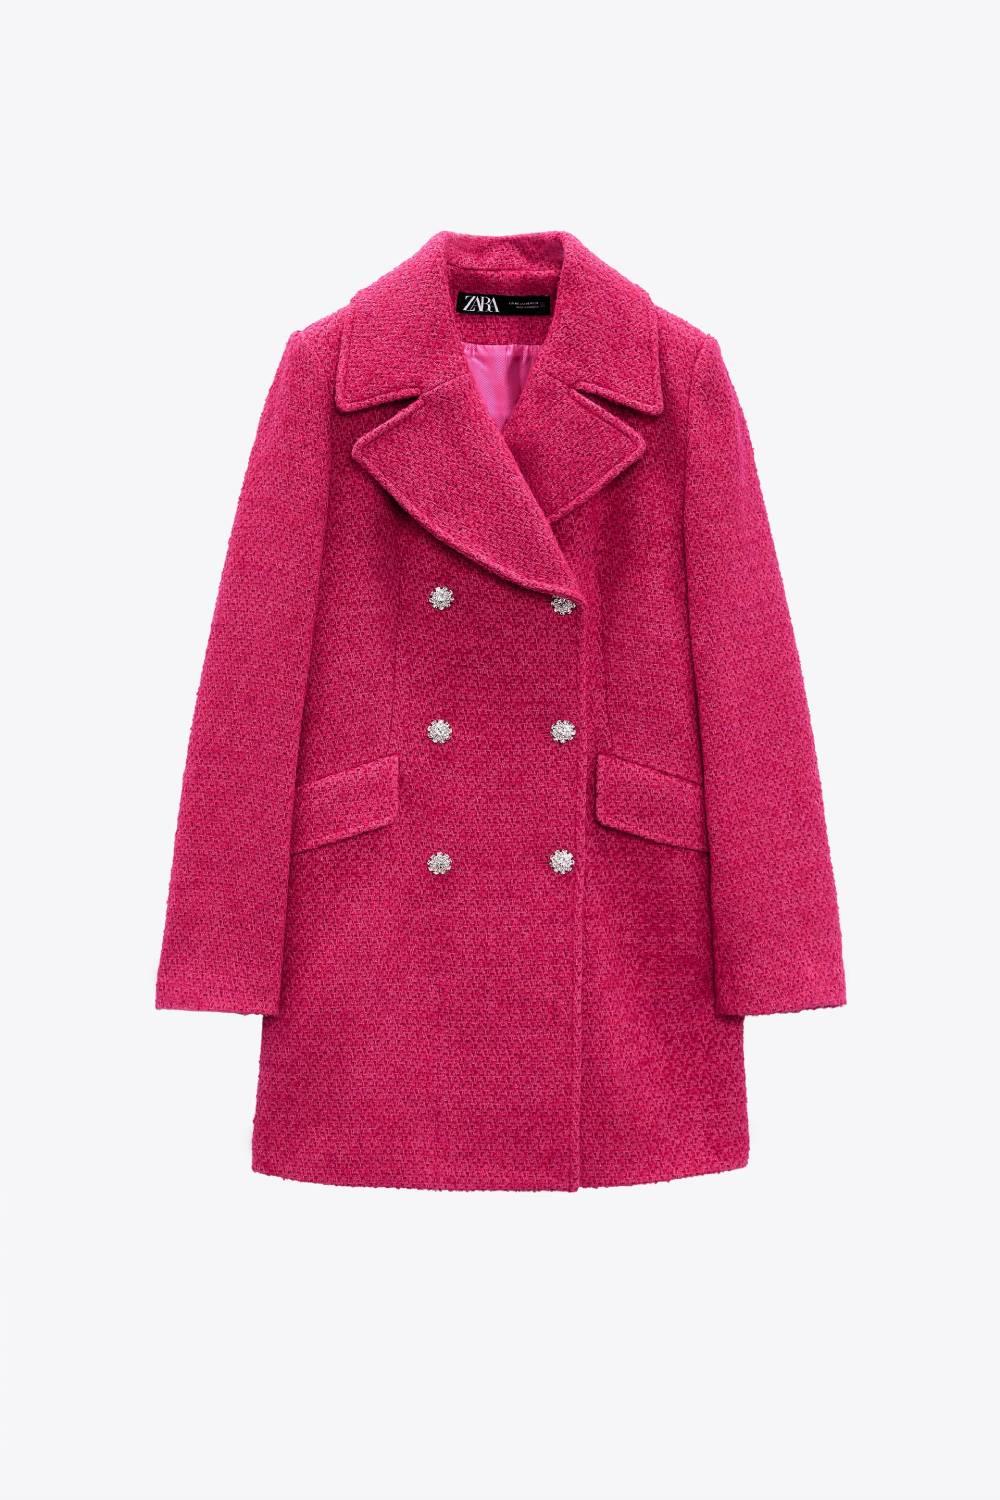 Abrigo rosa con botones joya